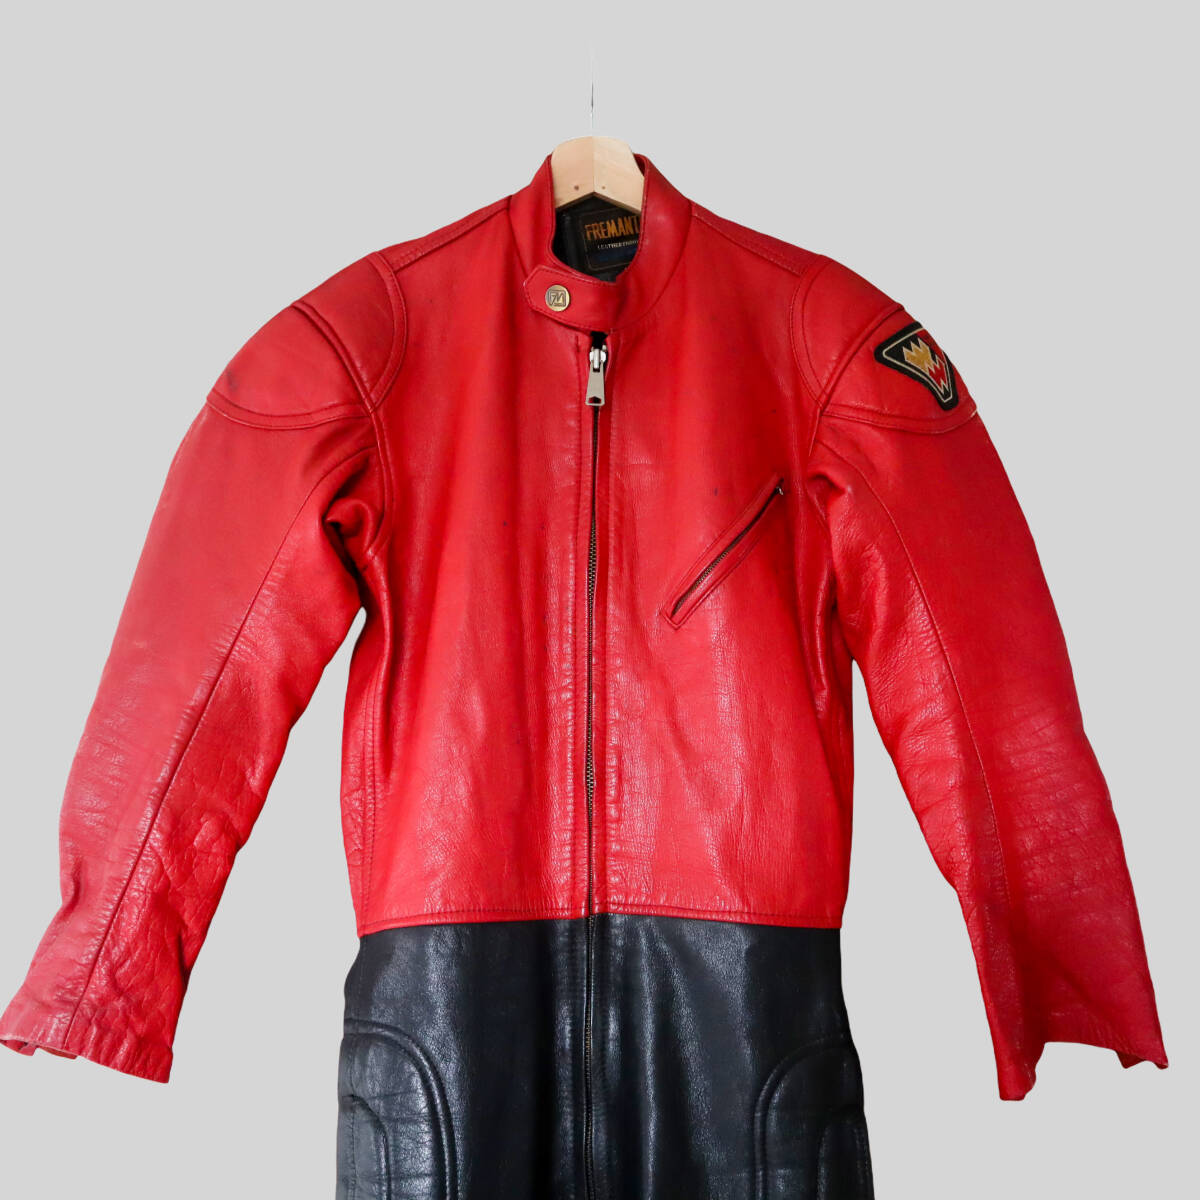 FREMANTLE/ Freemantle полный кожа костюм для гонок комбинезон комбинезон lai DIN g костюм кожаный комбинезон черный красный 